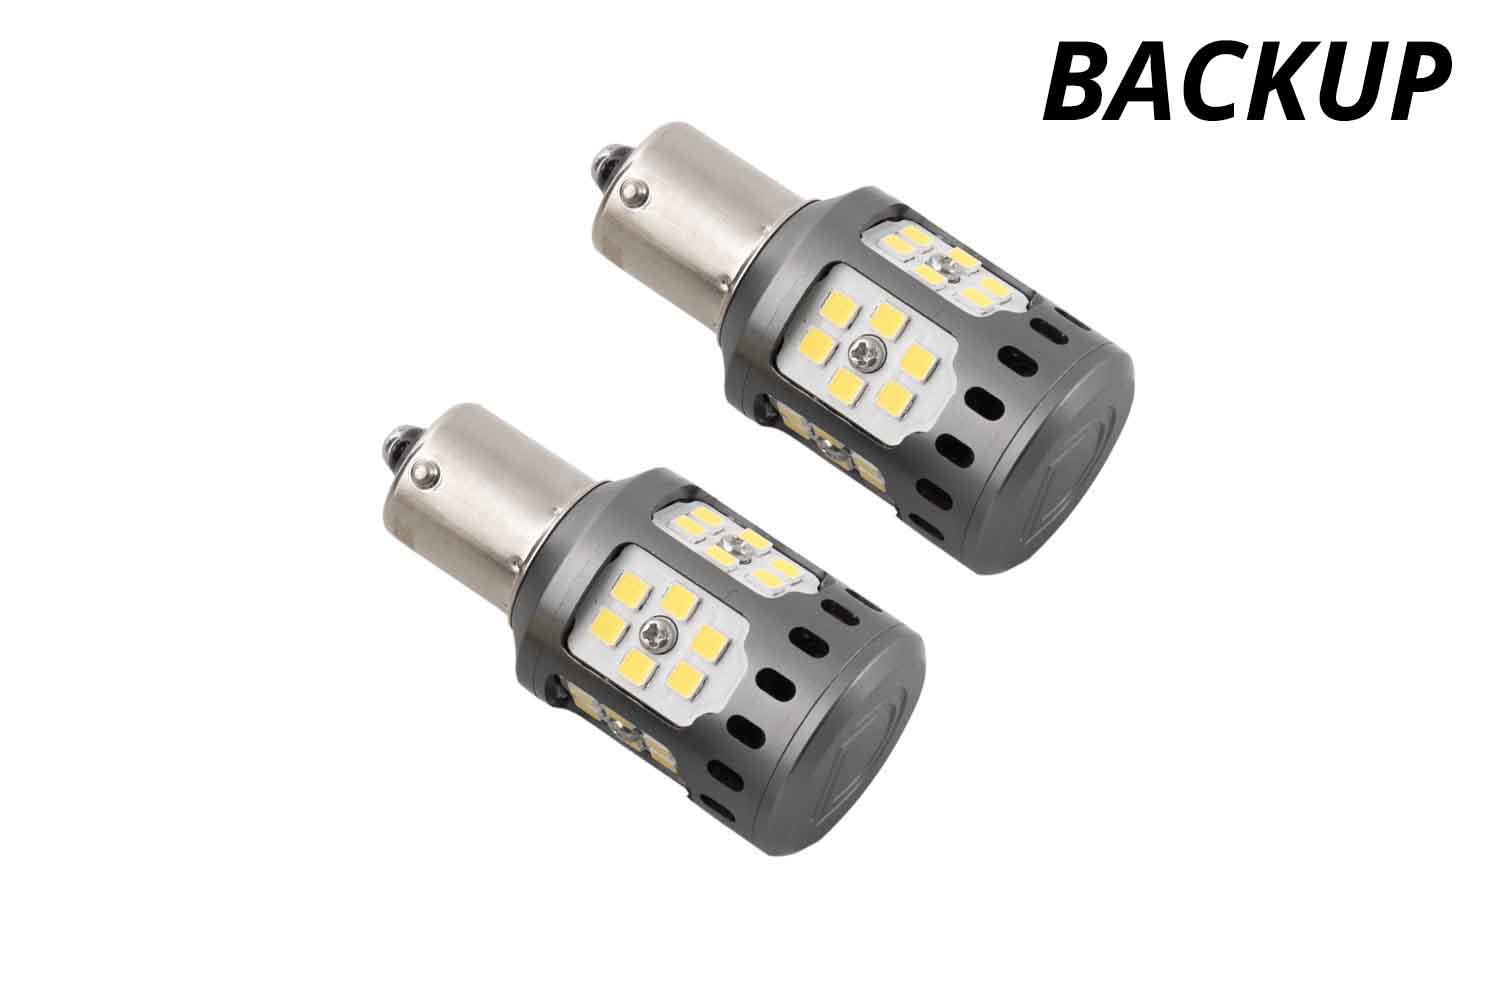 Backup LEDs for 1990-1997 Mazda Miata (pair)